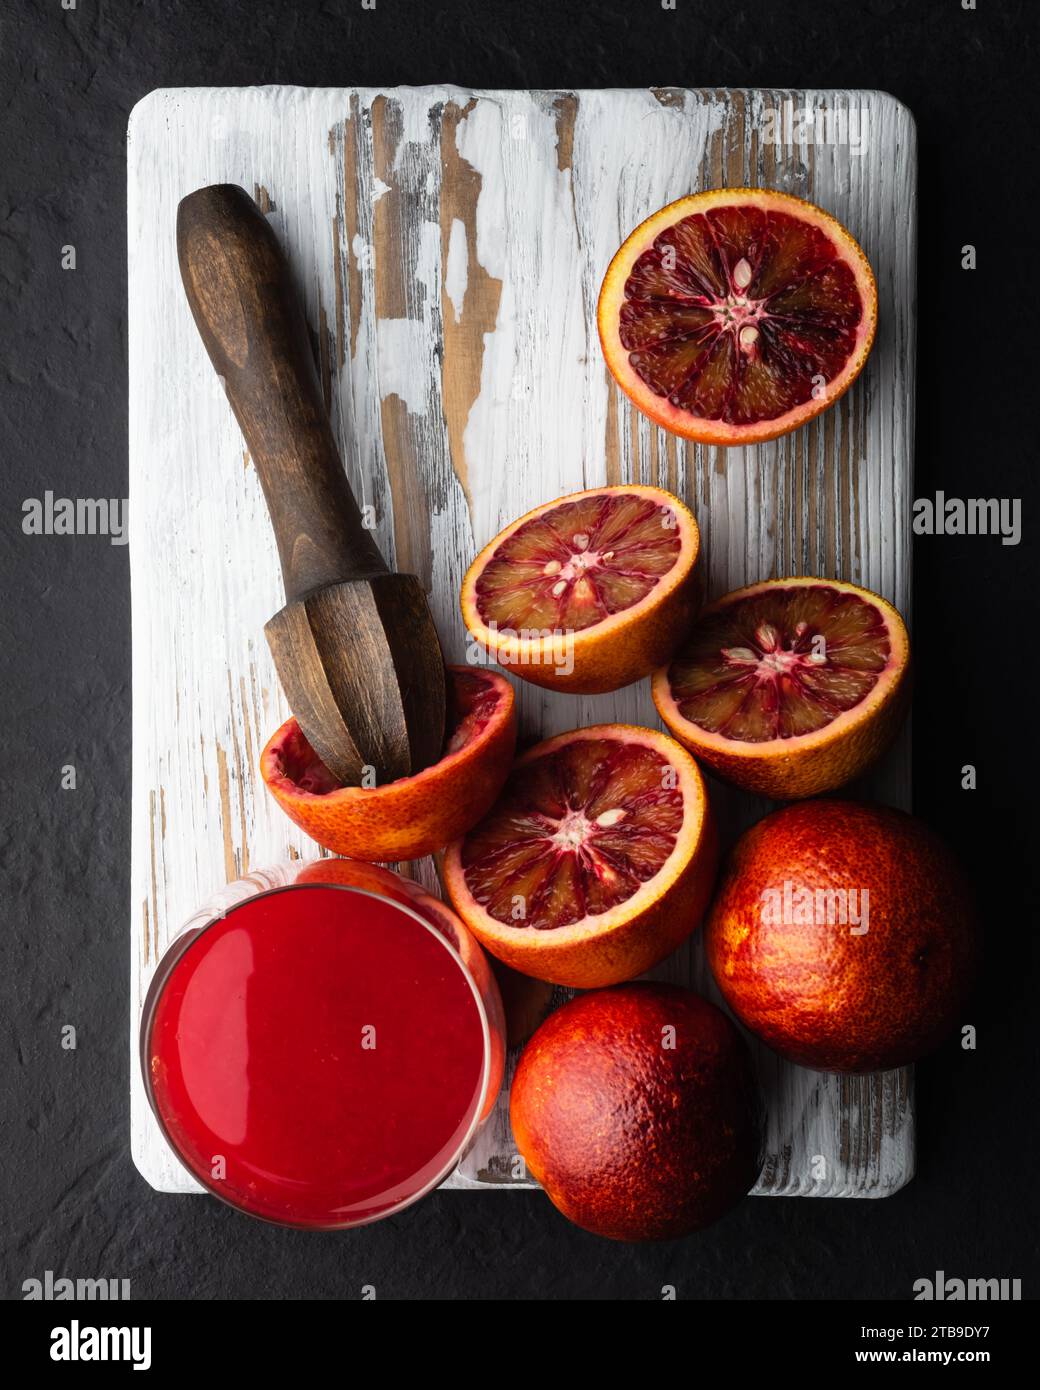 Morceaux d'oranges siciliennes rouges et presse-étoupe à main sur panneau de bois blanc closeup. Concept vitaminique d'alimentation saine. Photographie culinaire Banque D'Images